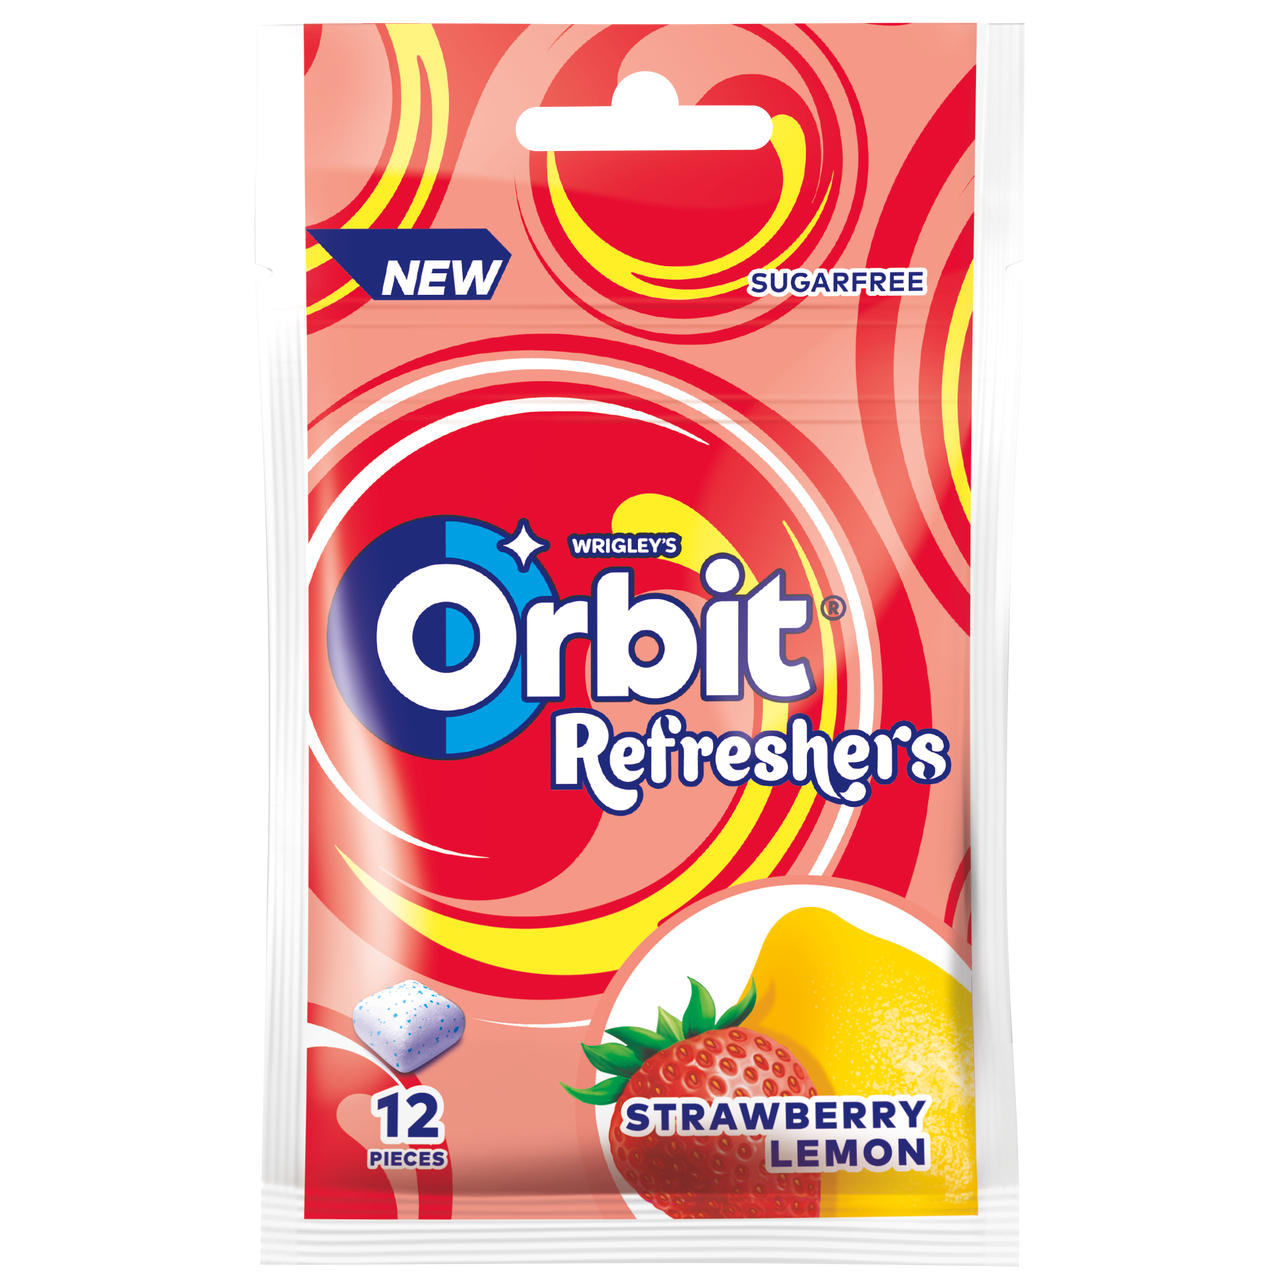 Orbit® Refreshers Strawberry Lemon
Gramatura: 26 g